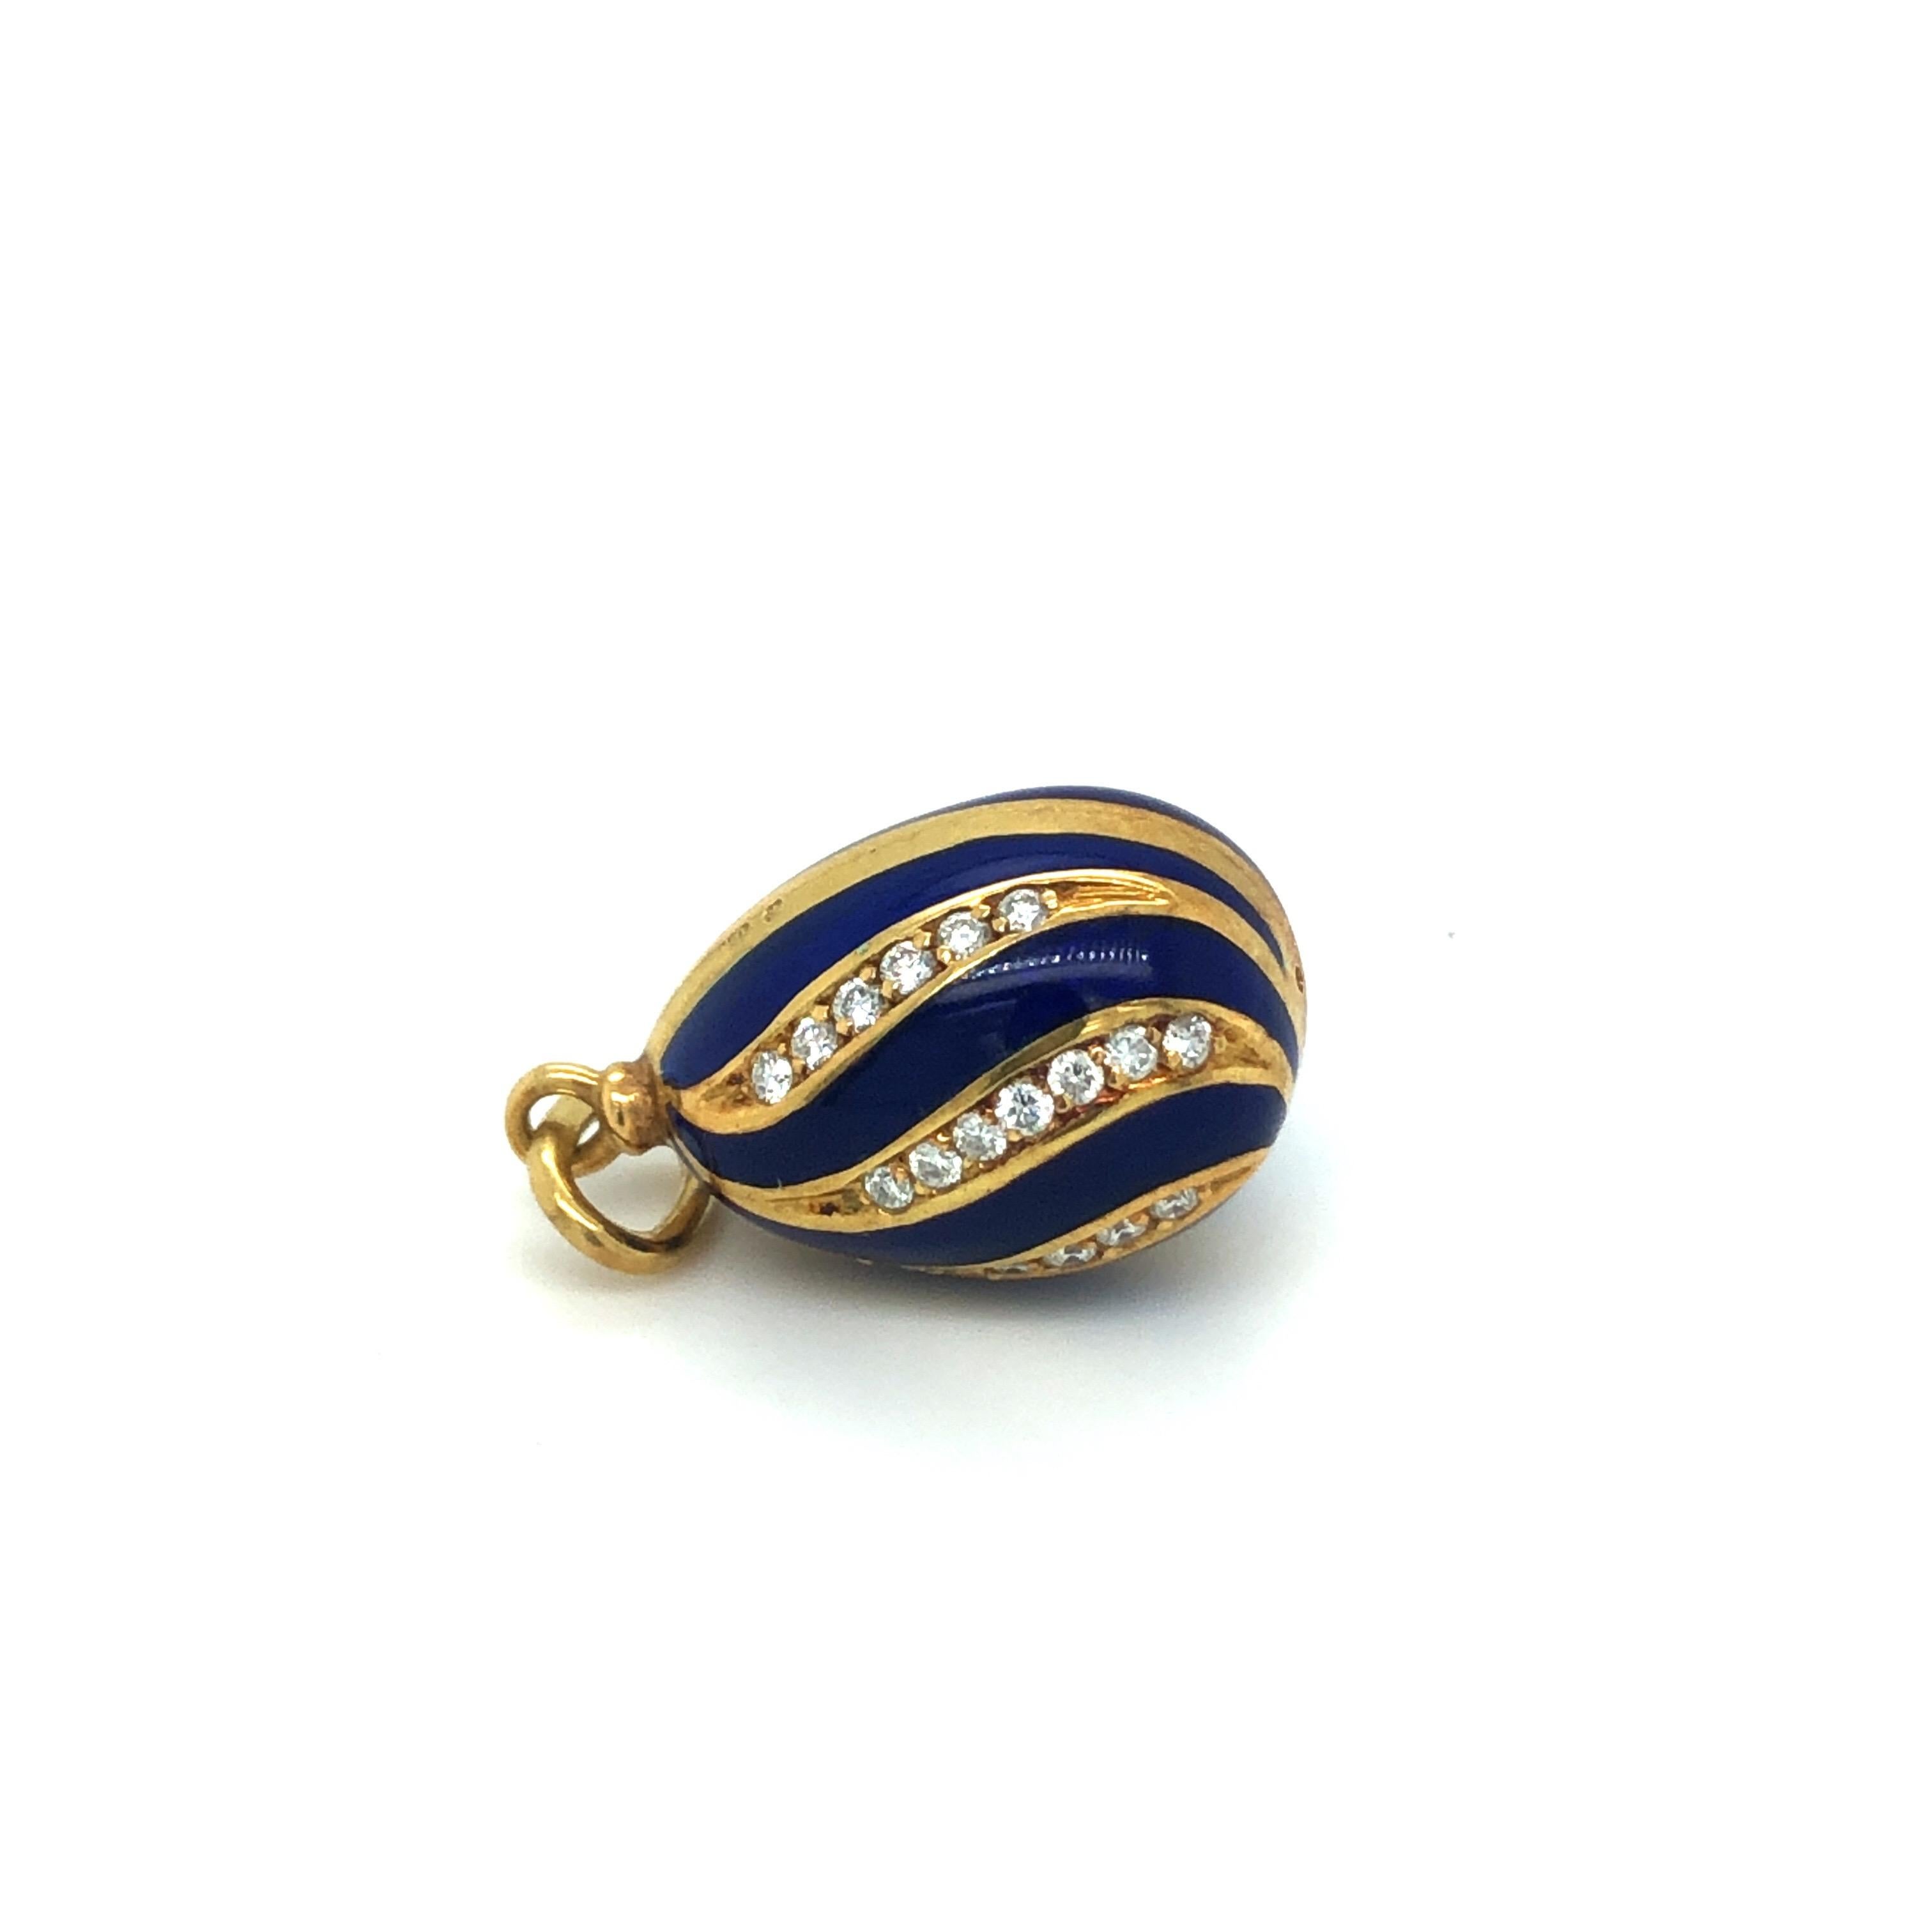 Russian Revival 18 Karat Yellow Gold Diamond Guilloché Blue Enamel Fabergé Egg Charm/Pendant